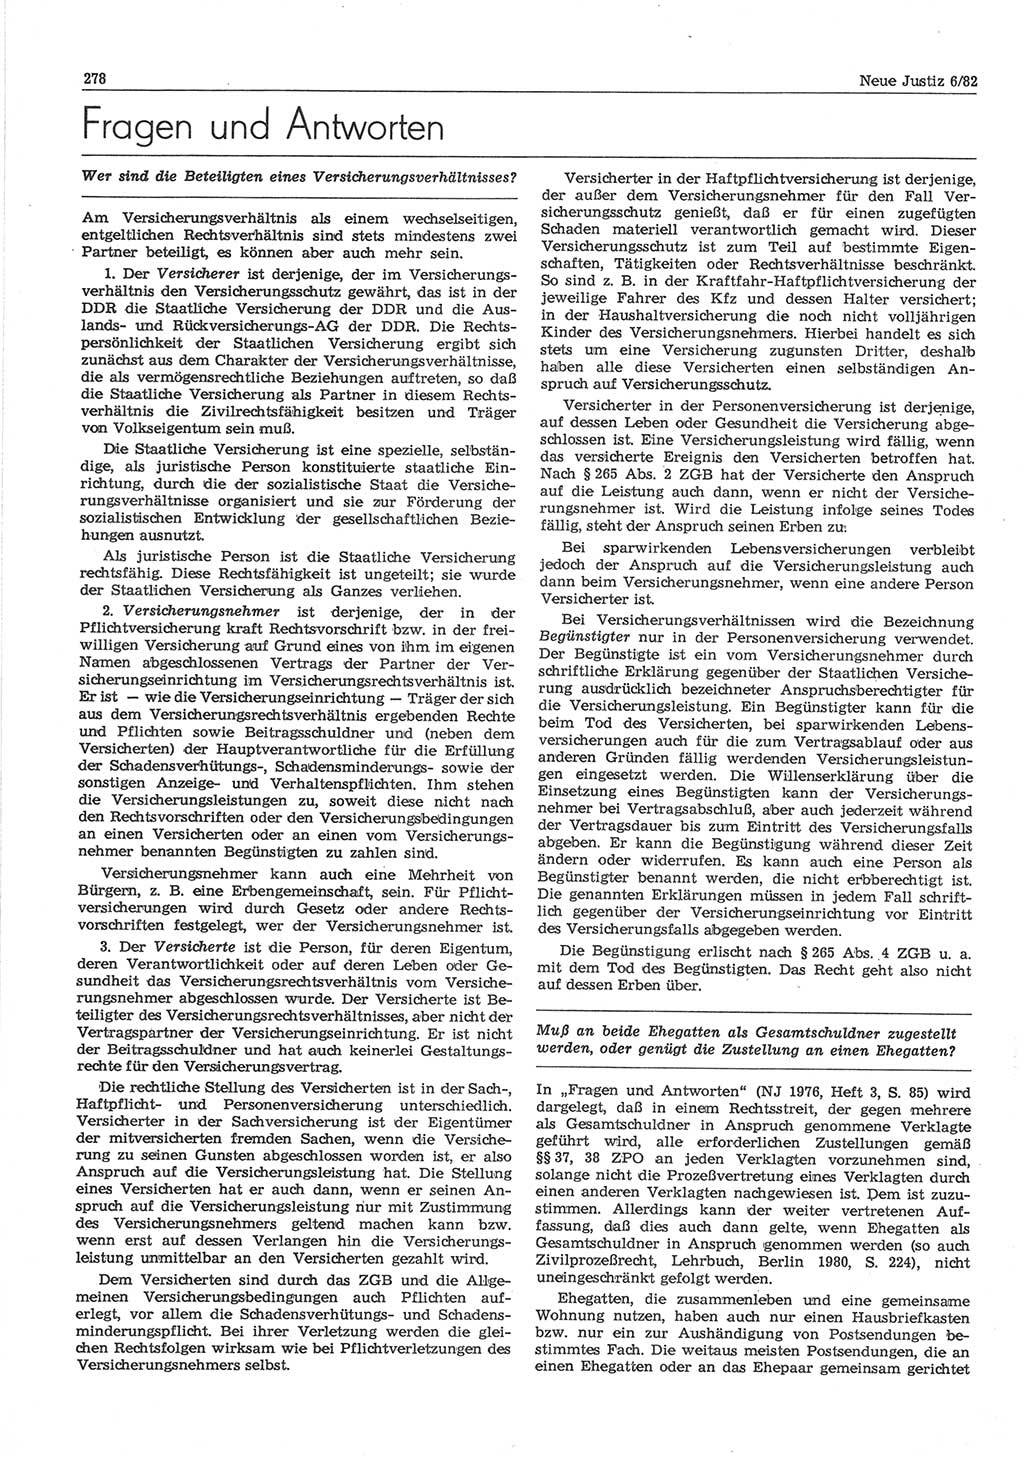 Neue Justiz (NJ), Zeitschrift für sozialistisches Recht und Gesetzlichkeit [Deutsche Demokratische Republik (DDR)], 36. Jahrgang 1982, Seite 278 (NJ DDR 1982, S. 278)